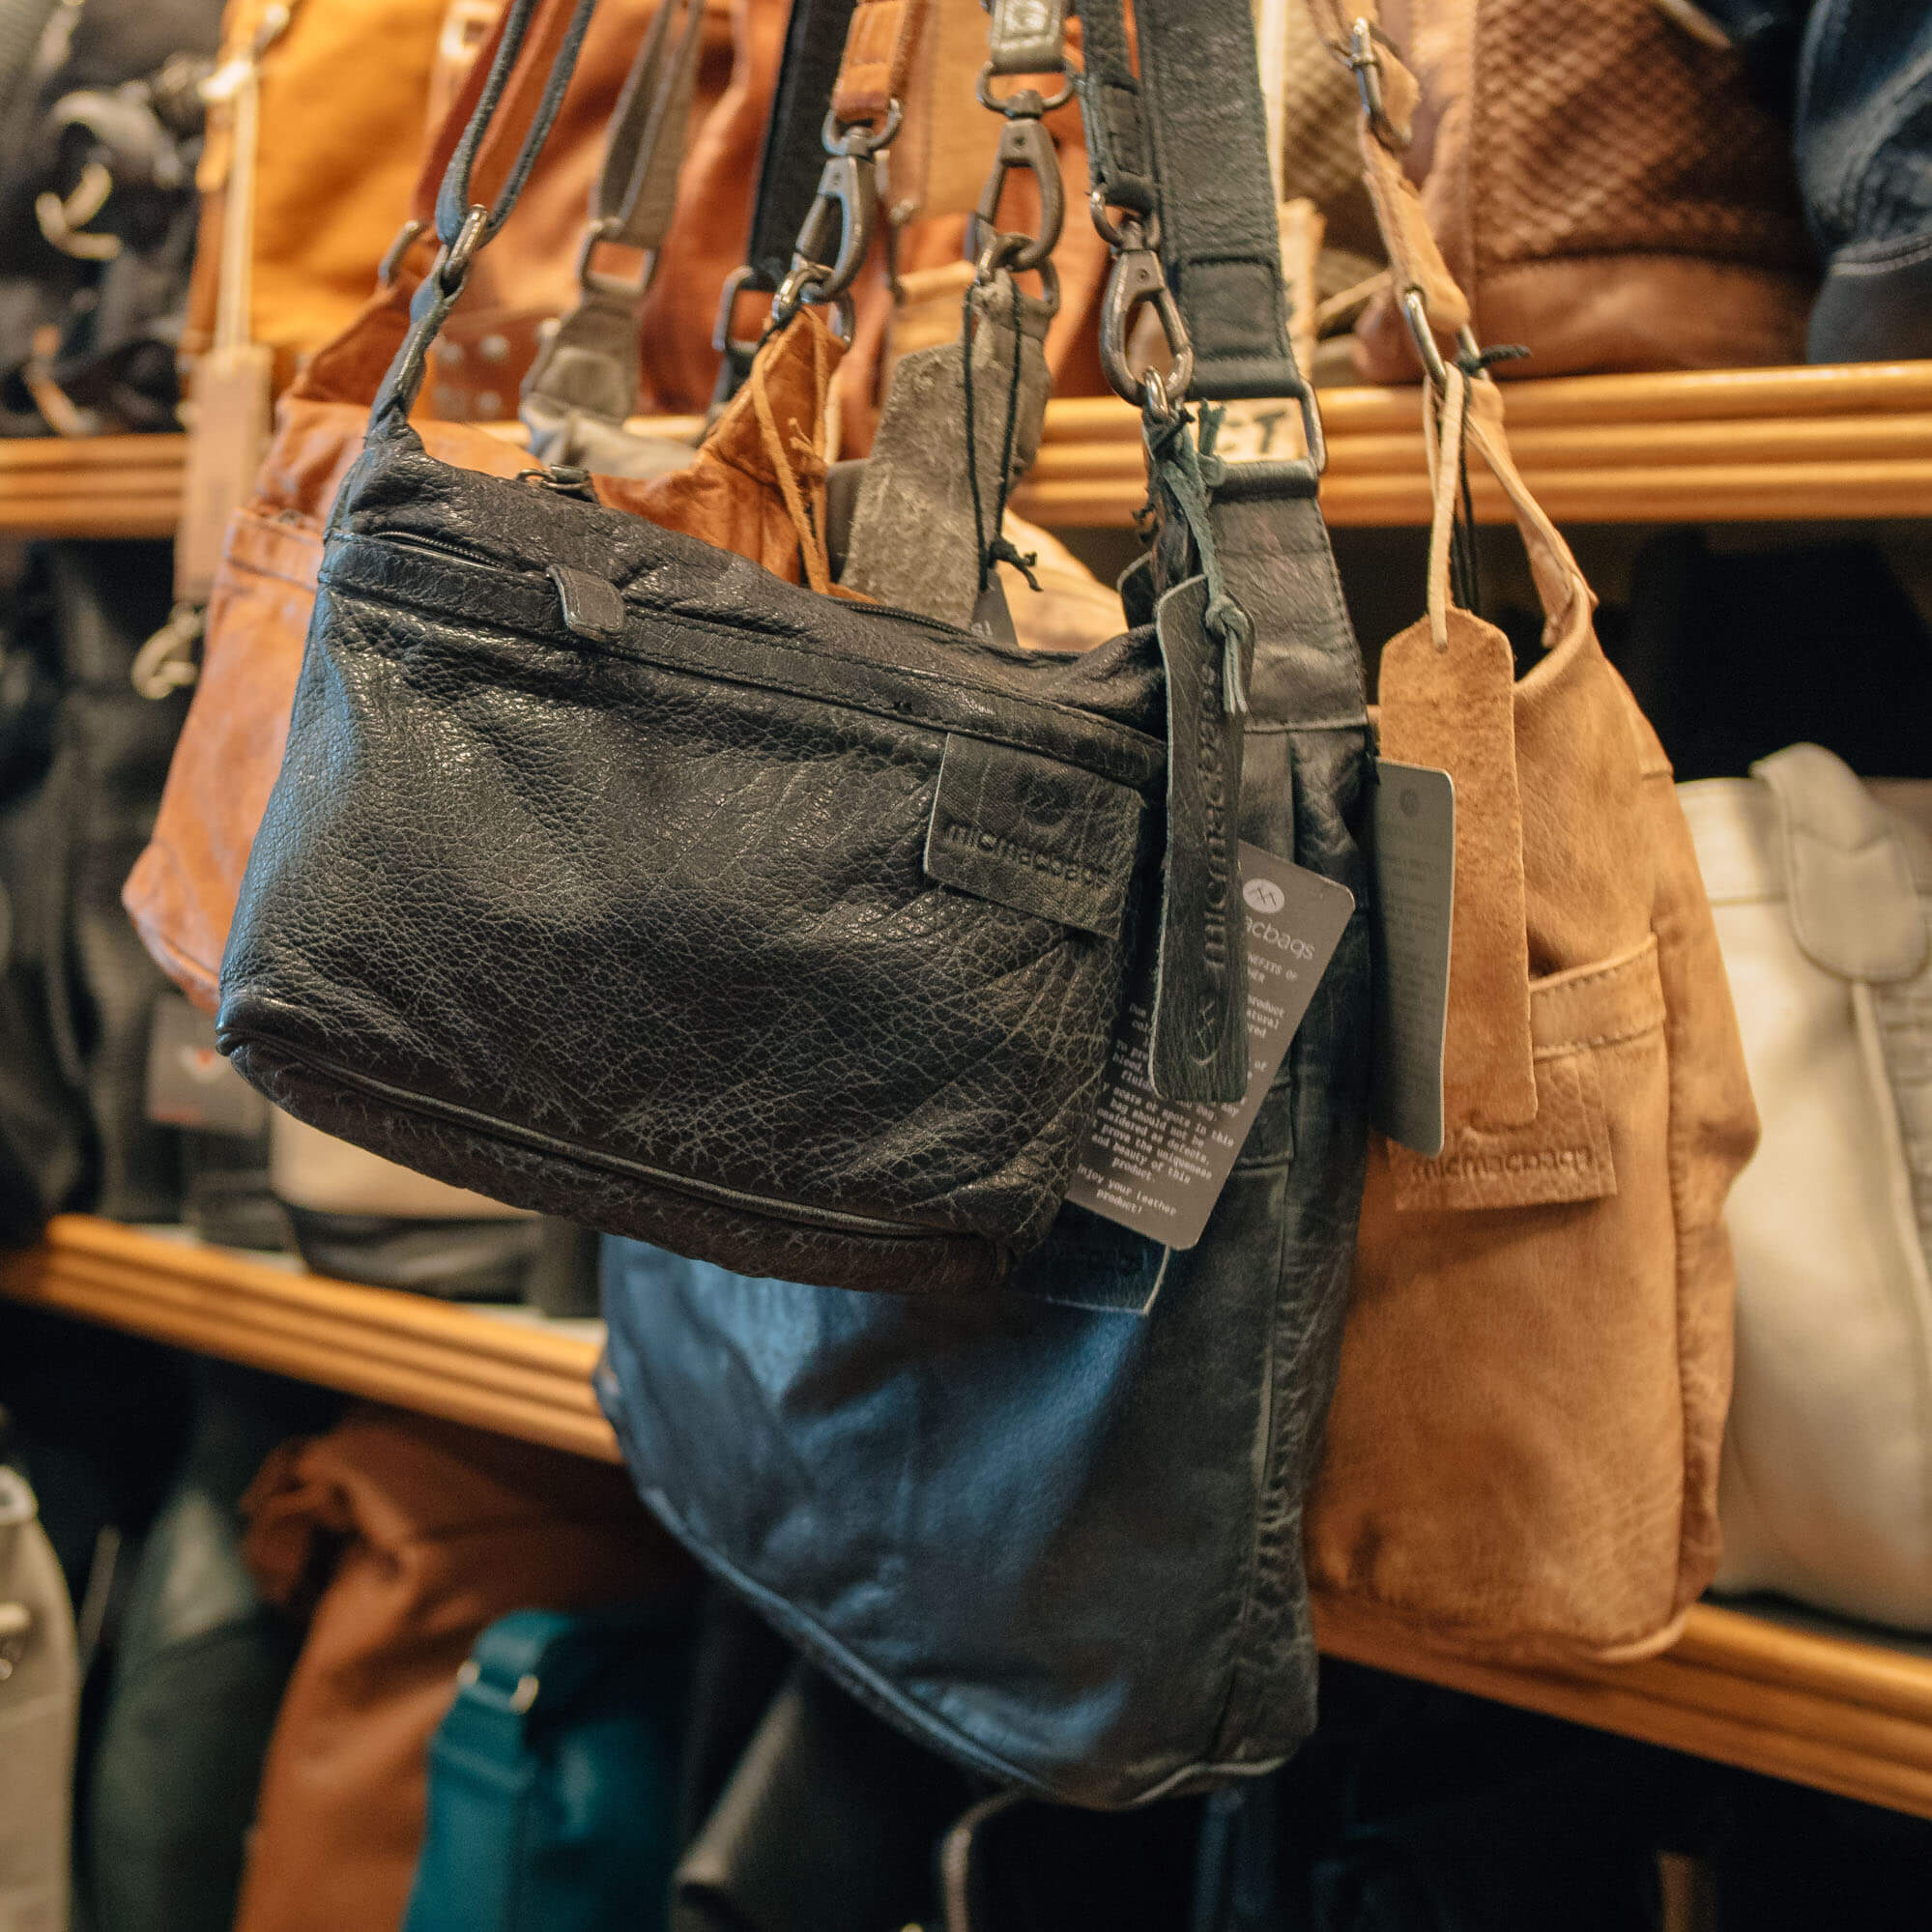 Verspilling Lijken Acht Hoe onderhoud ik mijn leren tas? | De Boer Lederwaren & Bijoux